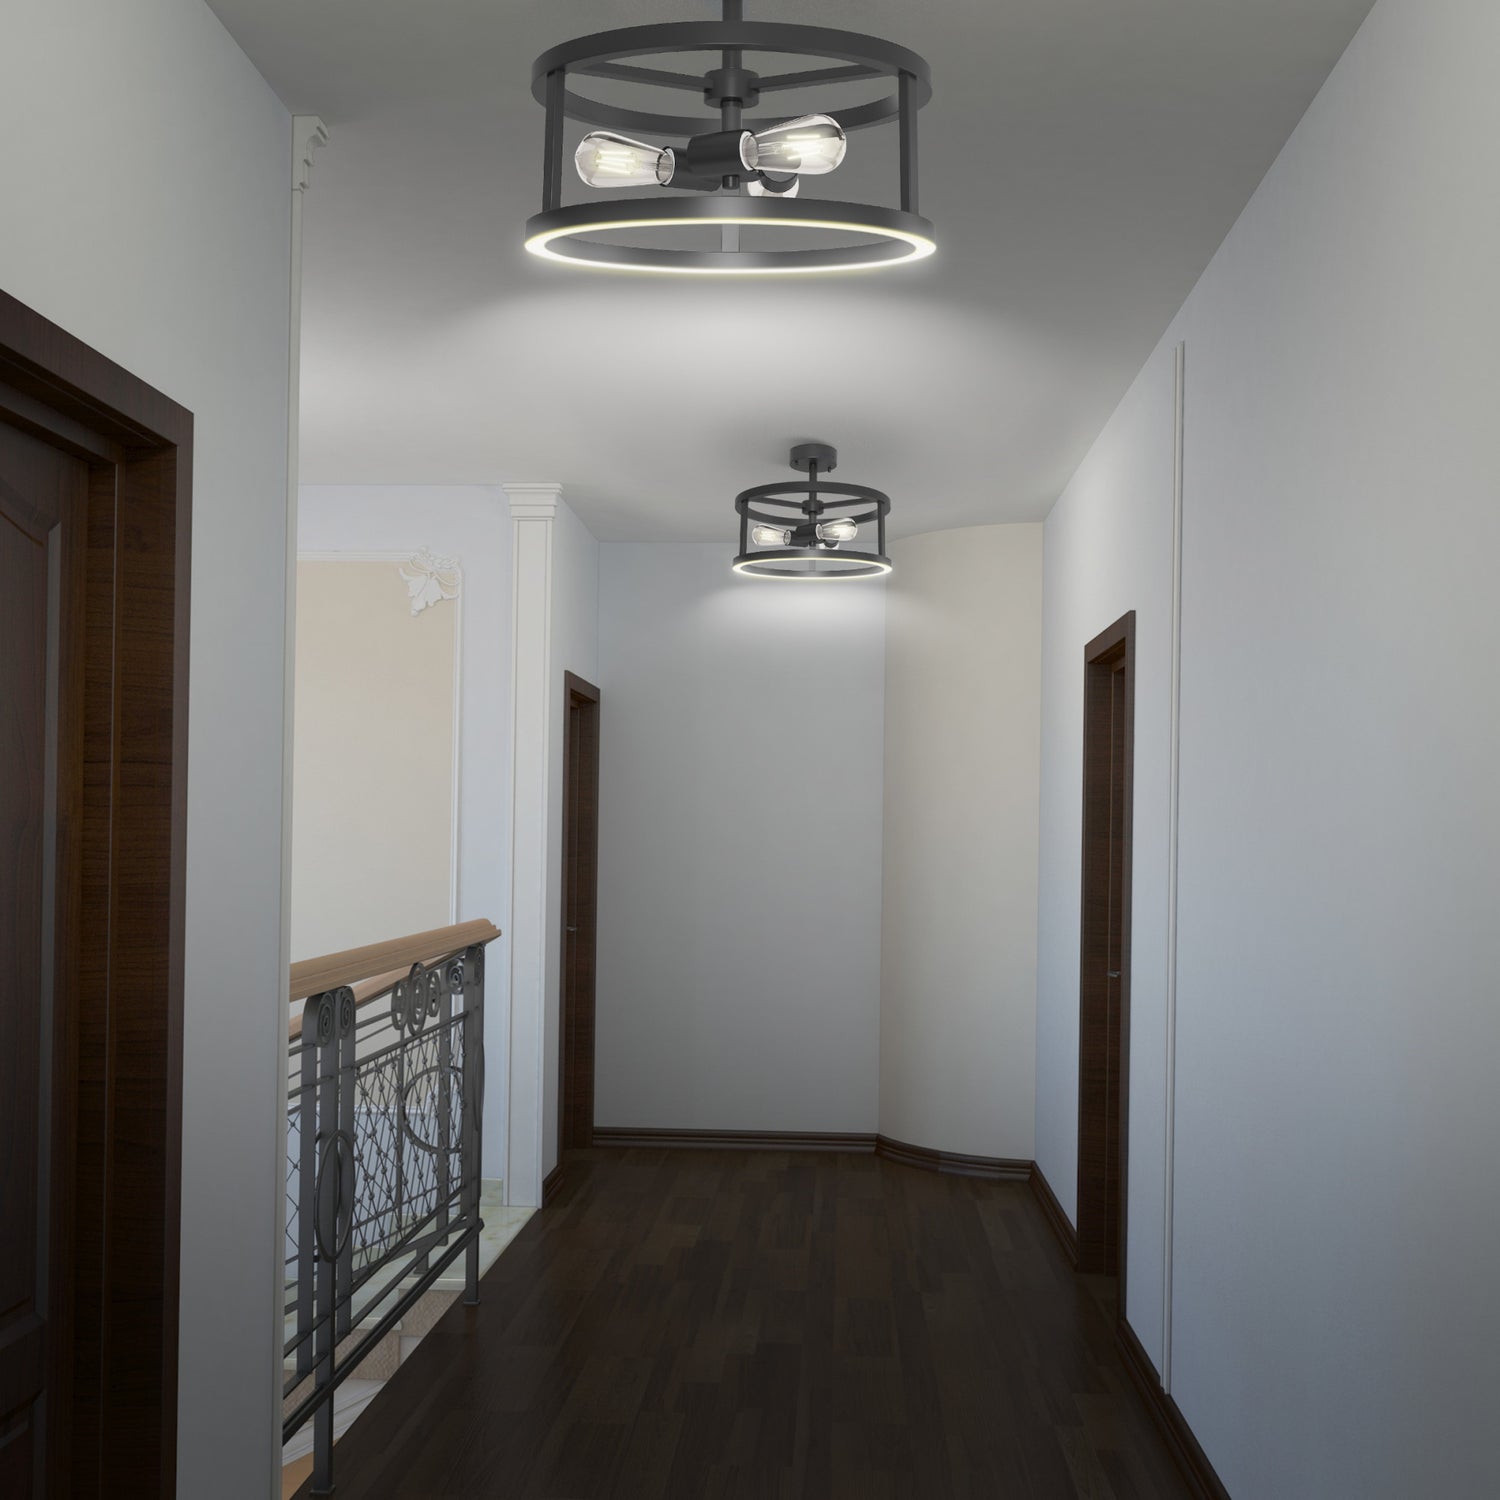 Katalyst Collection LED Semi Flush Decorative Ceiling Light Fixture Matte Black